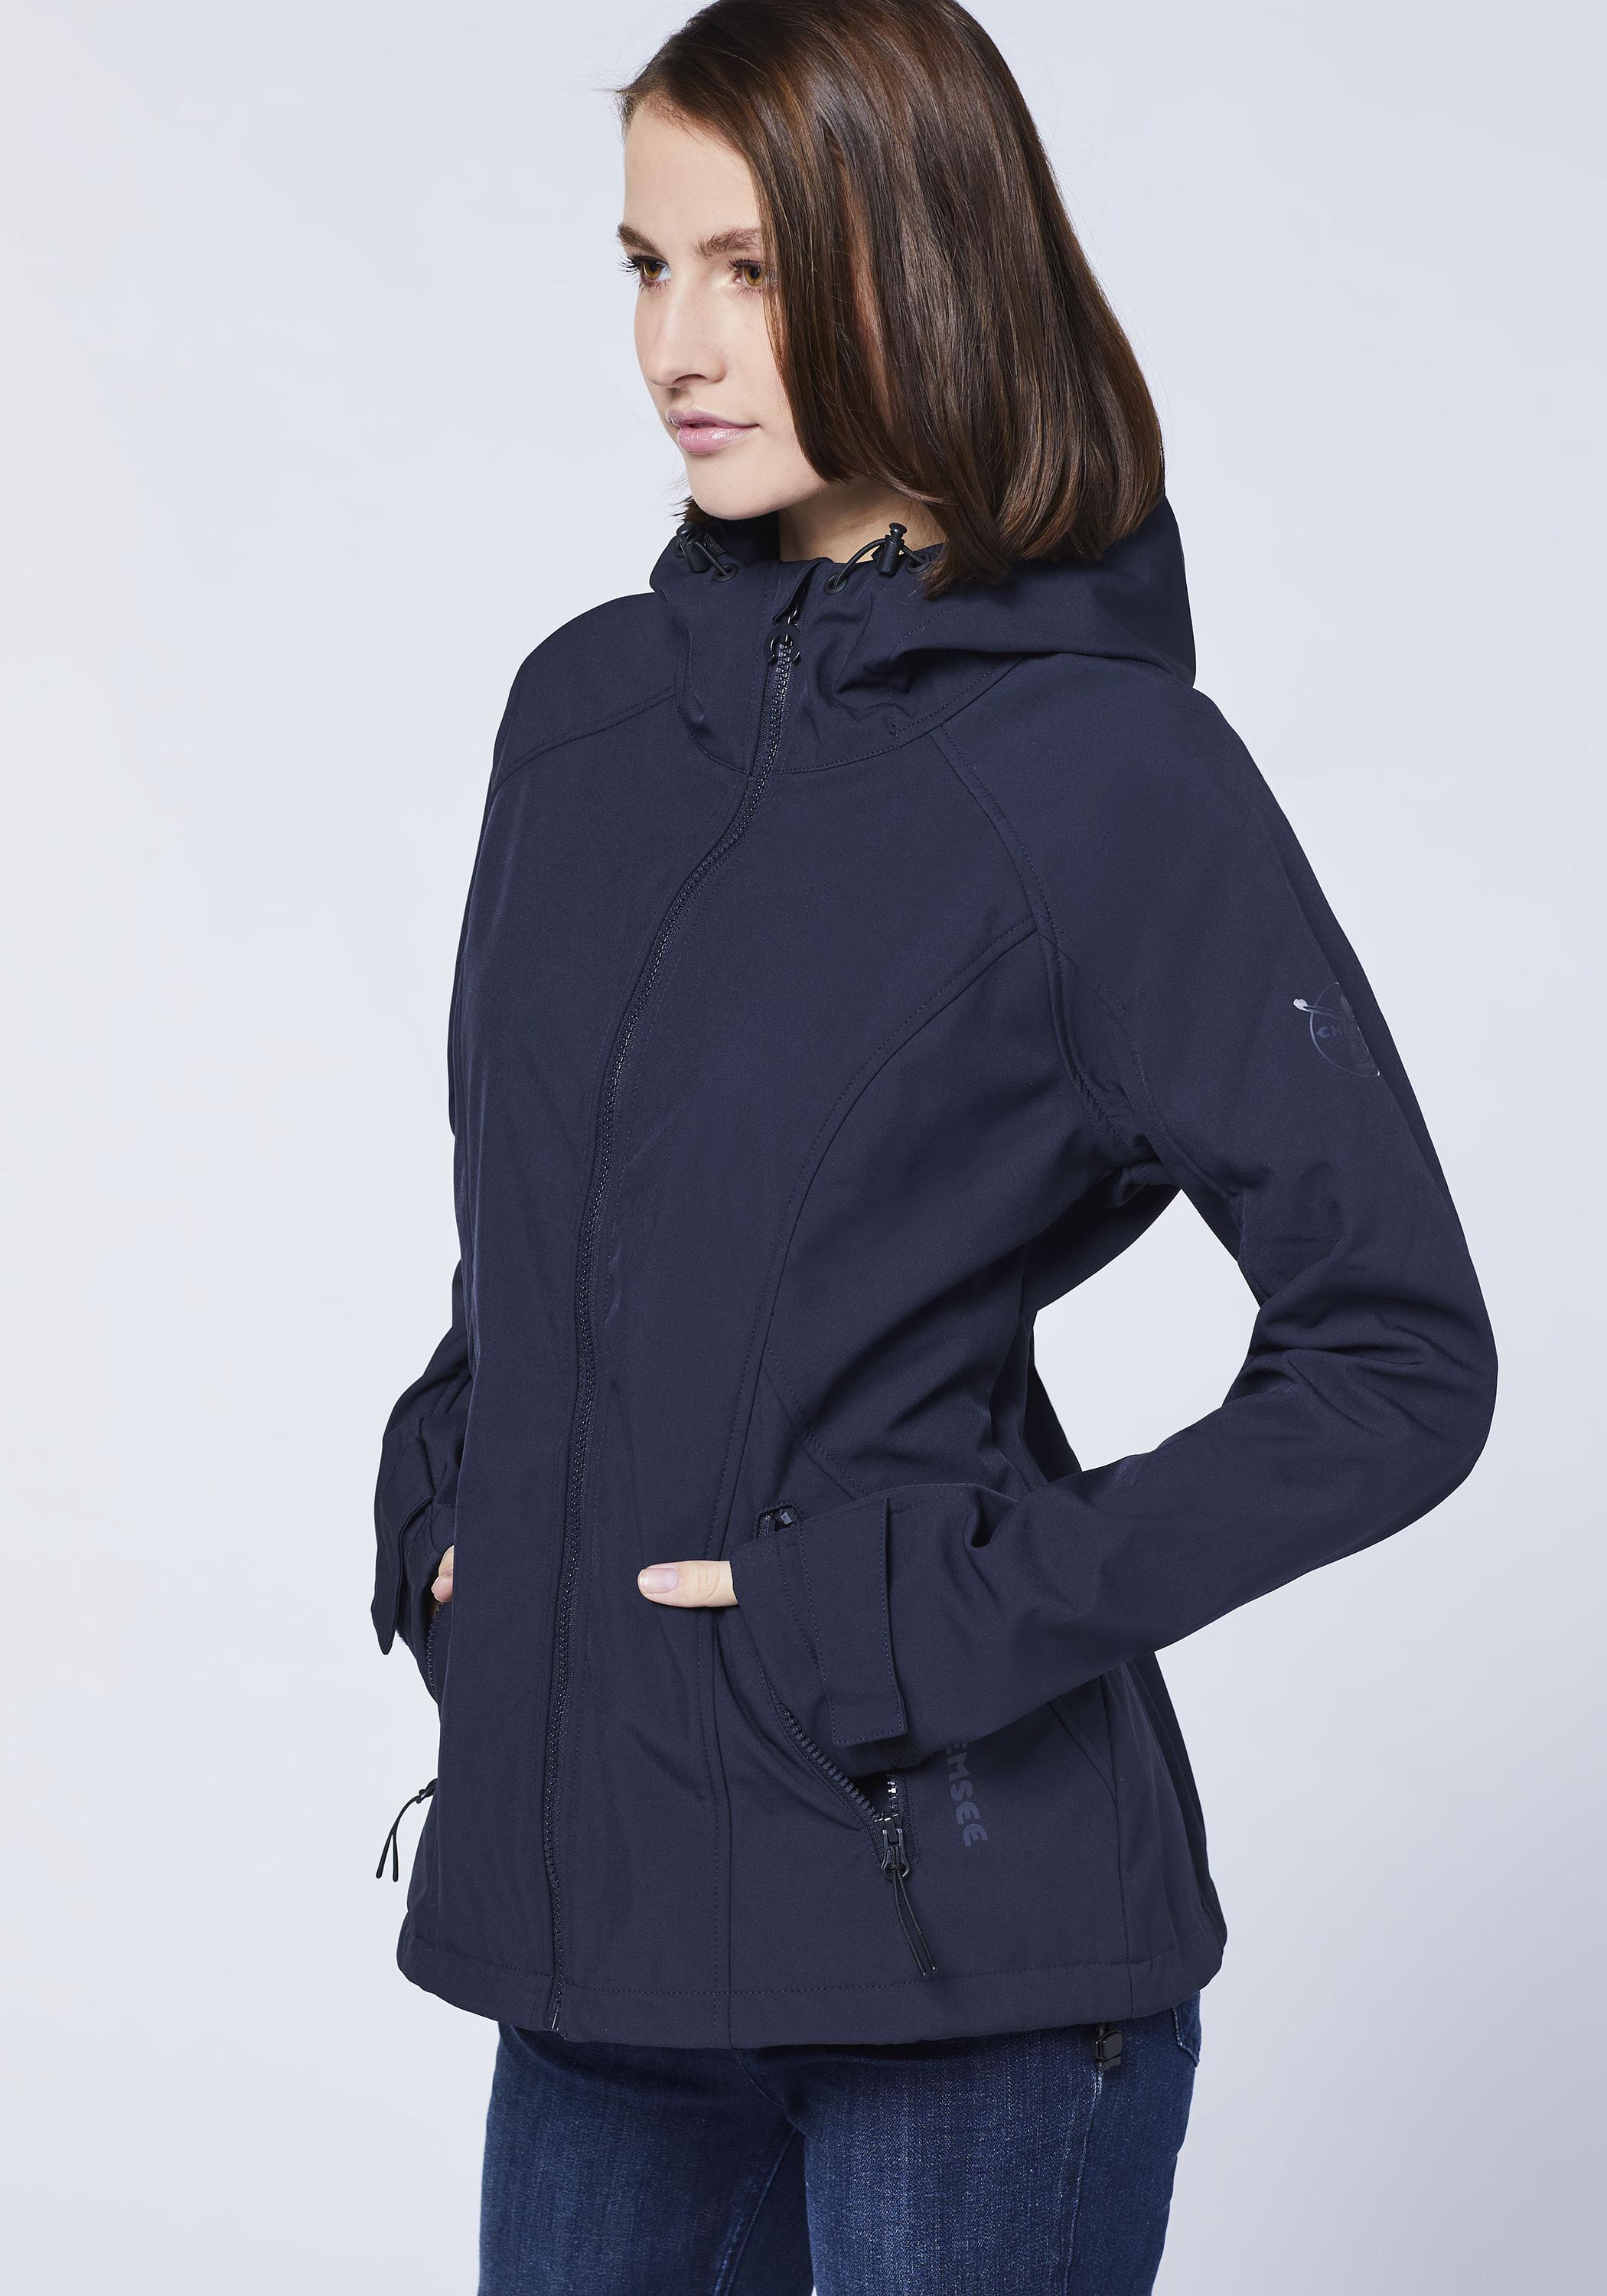 Chiemsee Softshell-Jacke Softshelljacke Damen Dark Blue/Black im Online  Shop von SportScheck kaufen